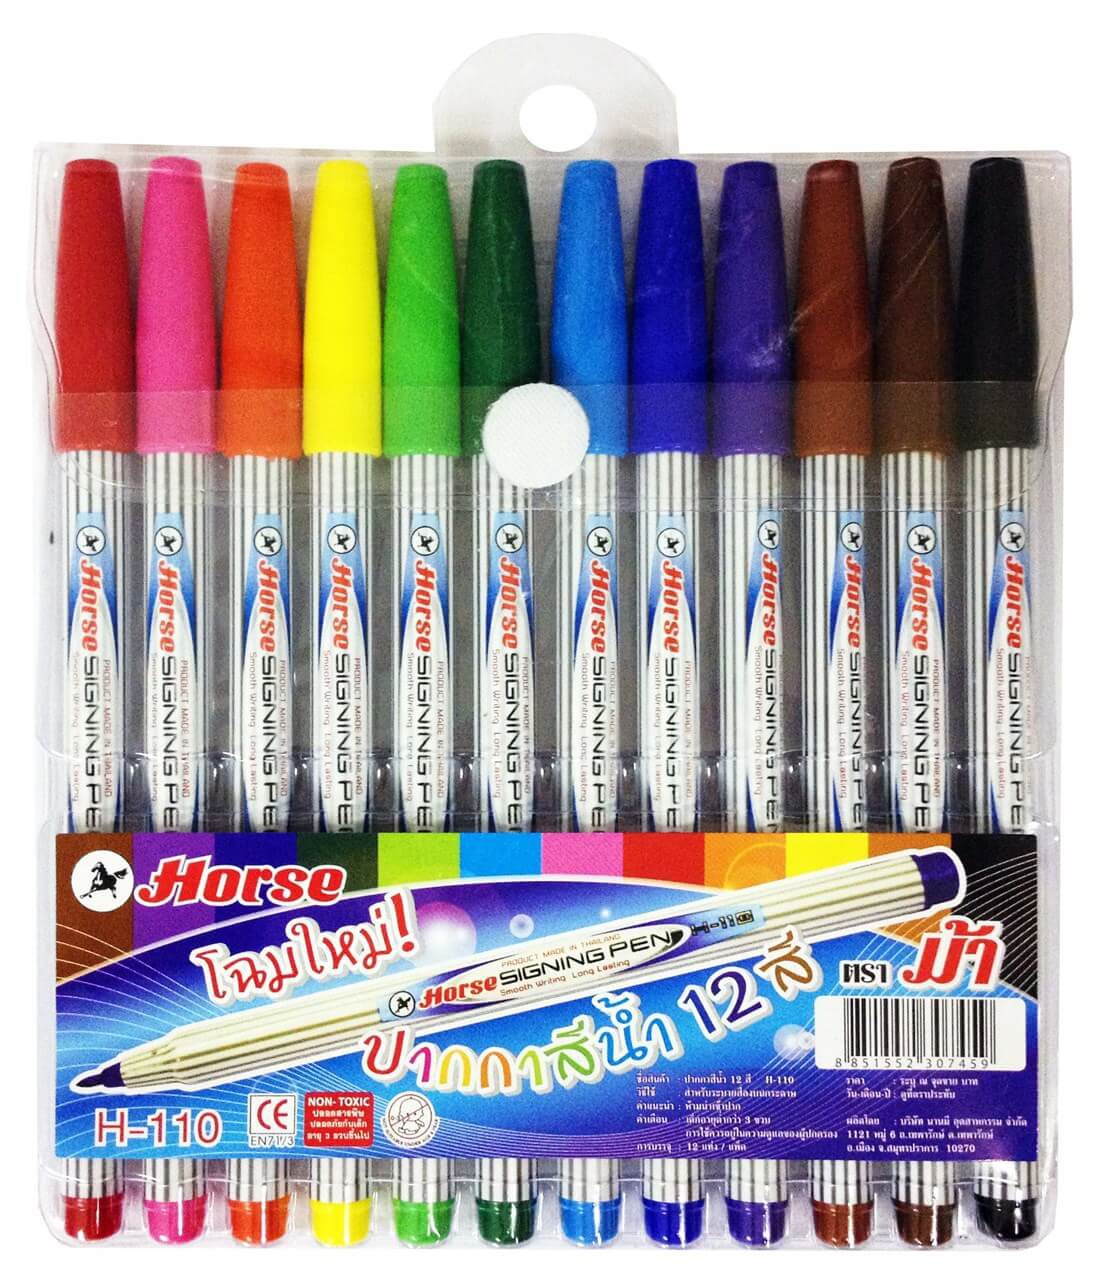 ปากกาเมจิก ตราม้า H-110 ชุด 12 สี